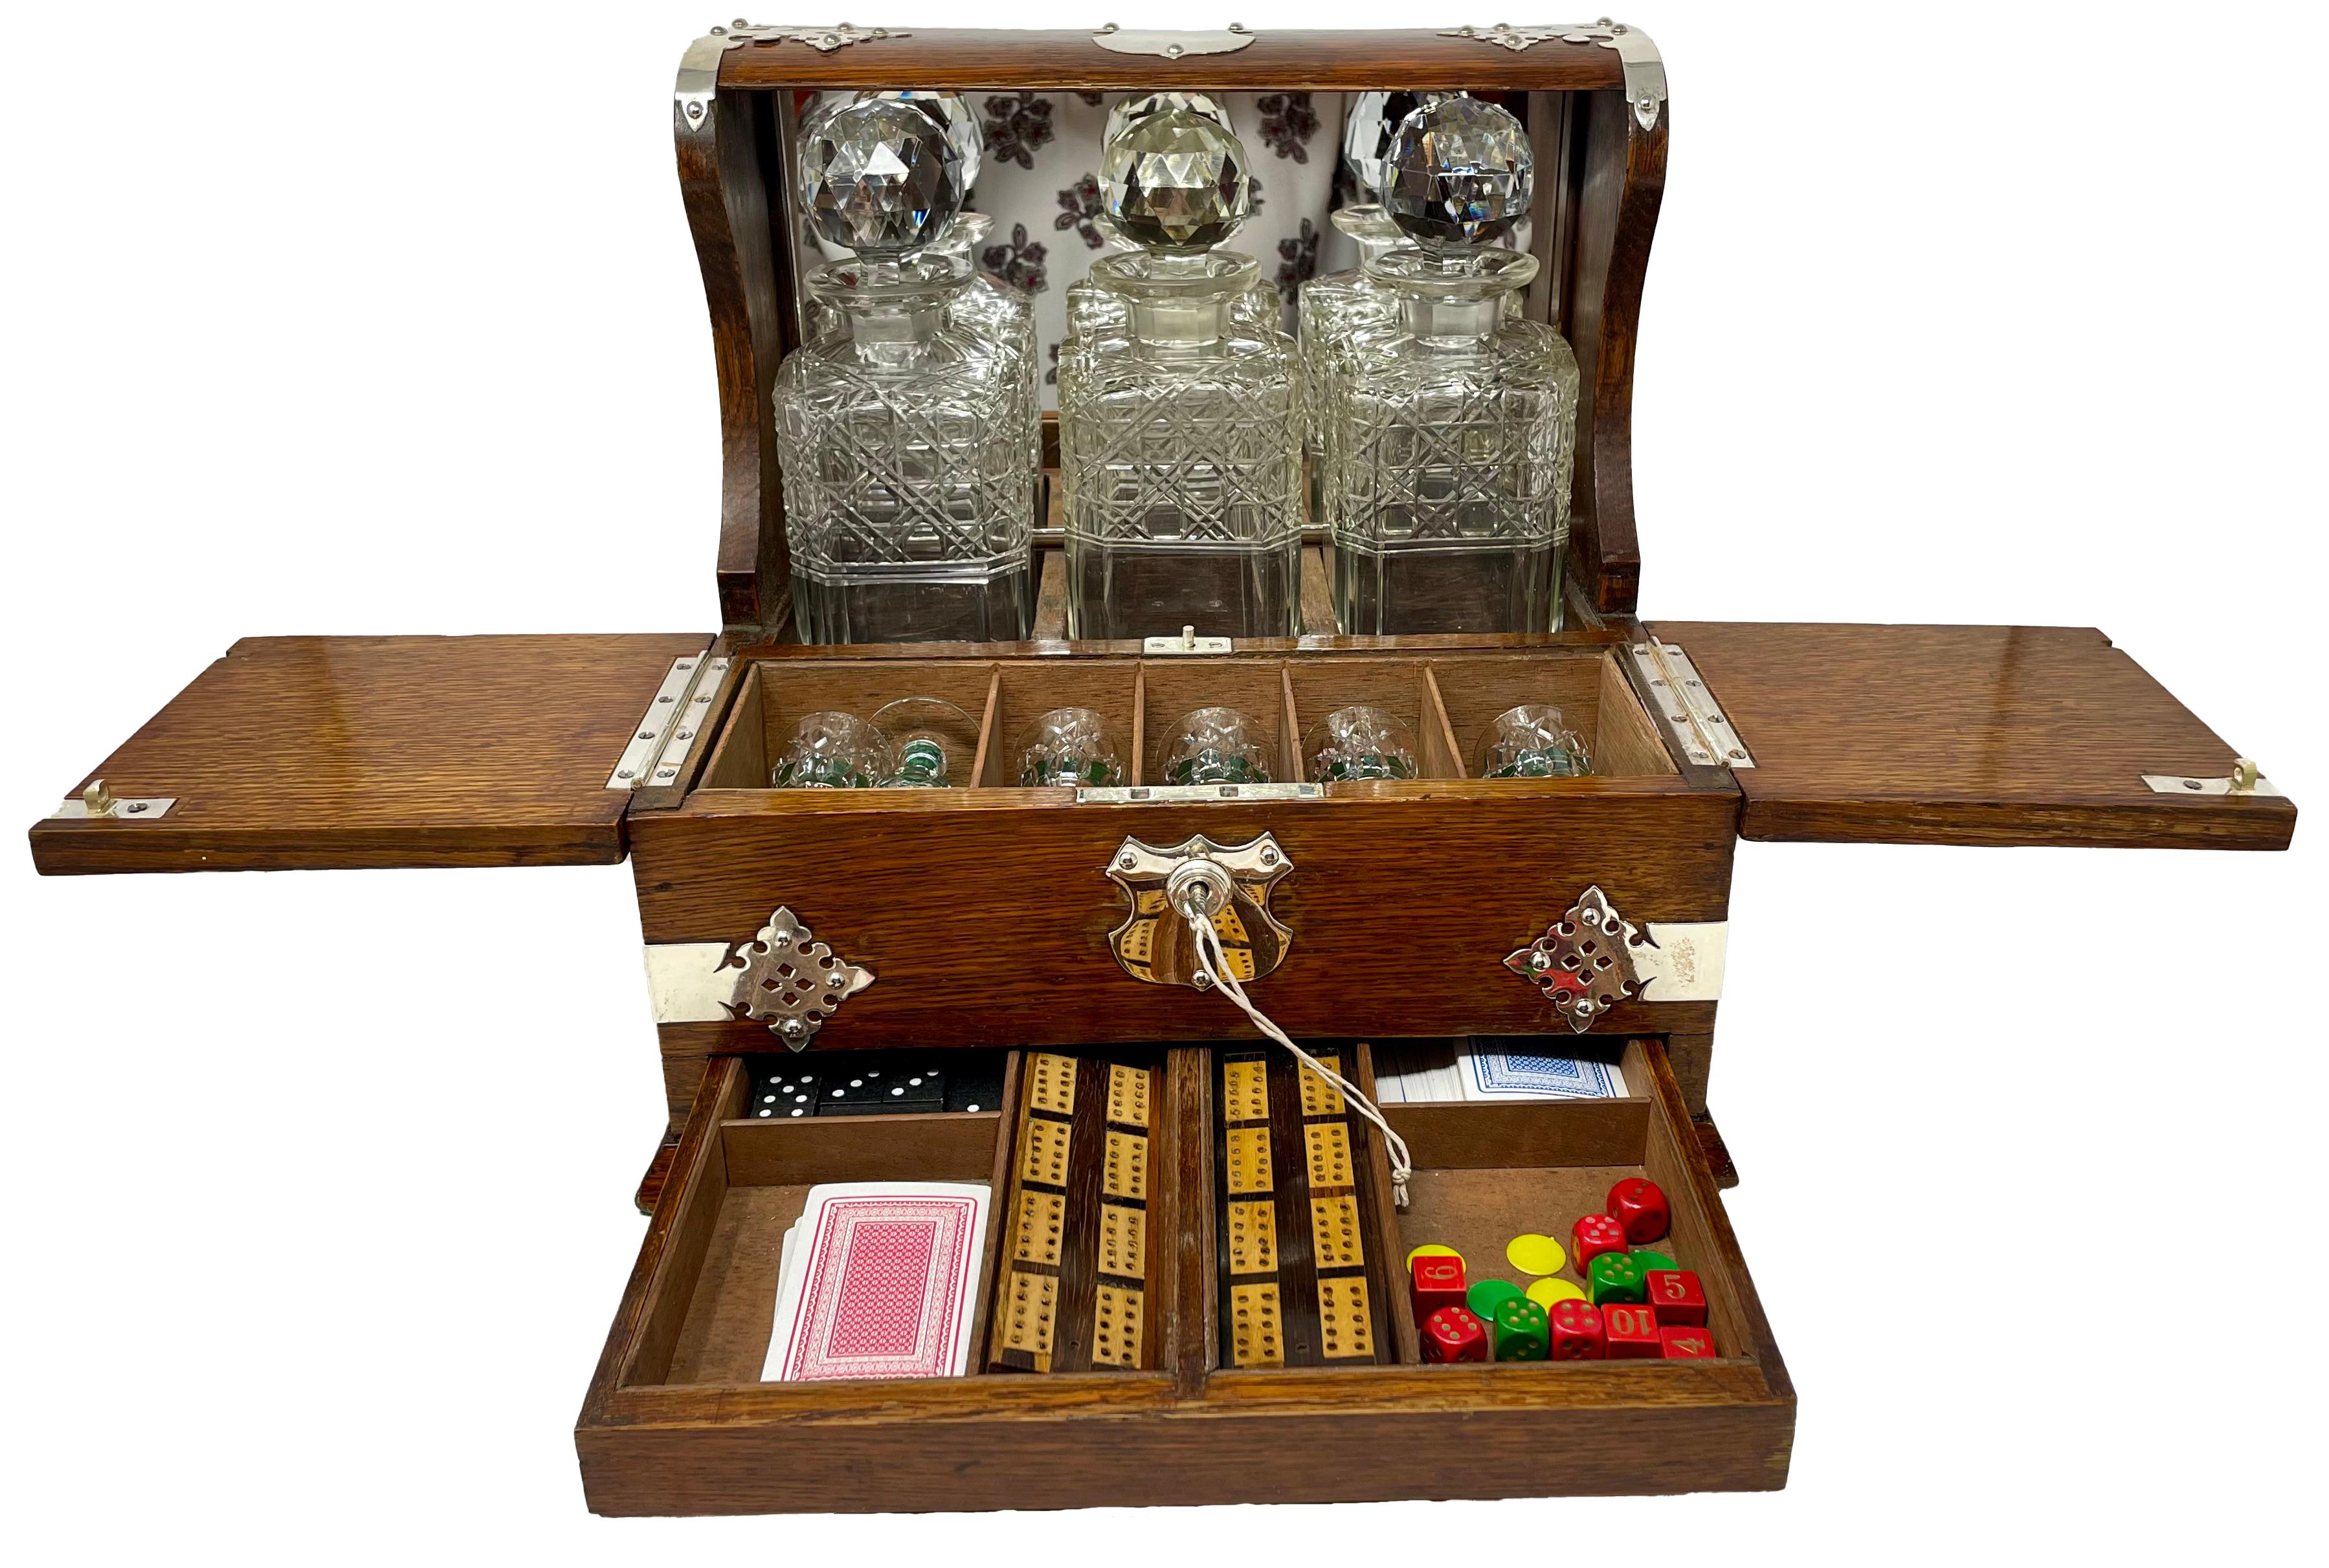 Antike englische Silberplatte montiert Eiche Tantalus und Spiele Kompendium Box mit 3 Cut Crystal Liquor Flaschen, 6 Cordials und mehrere Spiele.
Geschlossen: 13,25